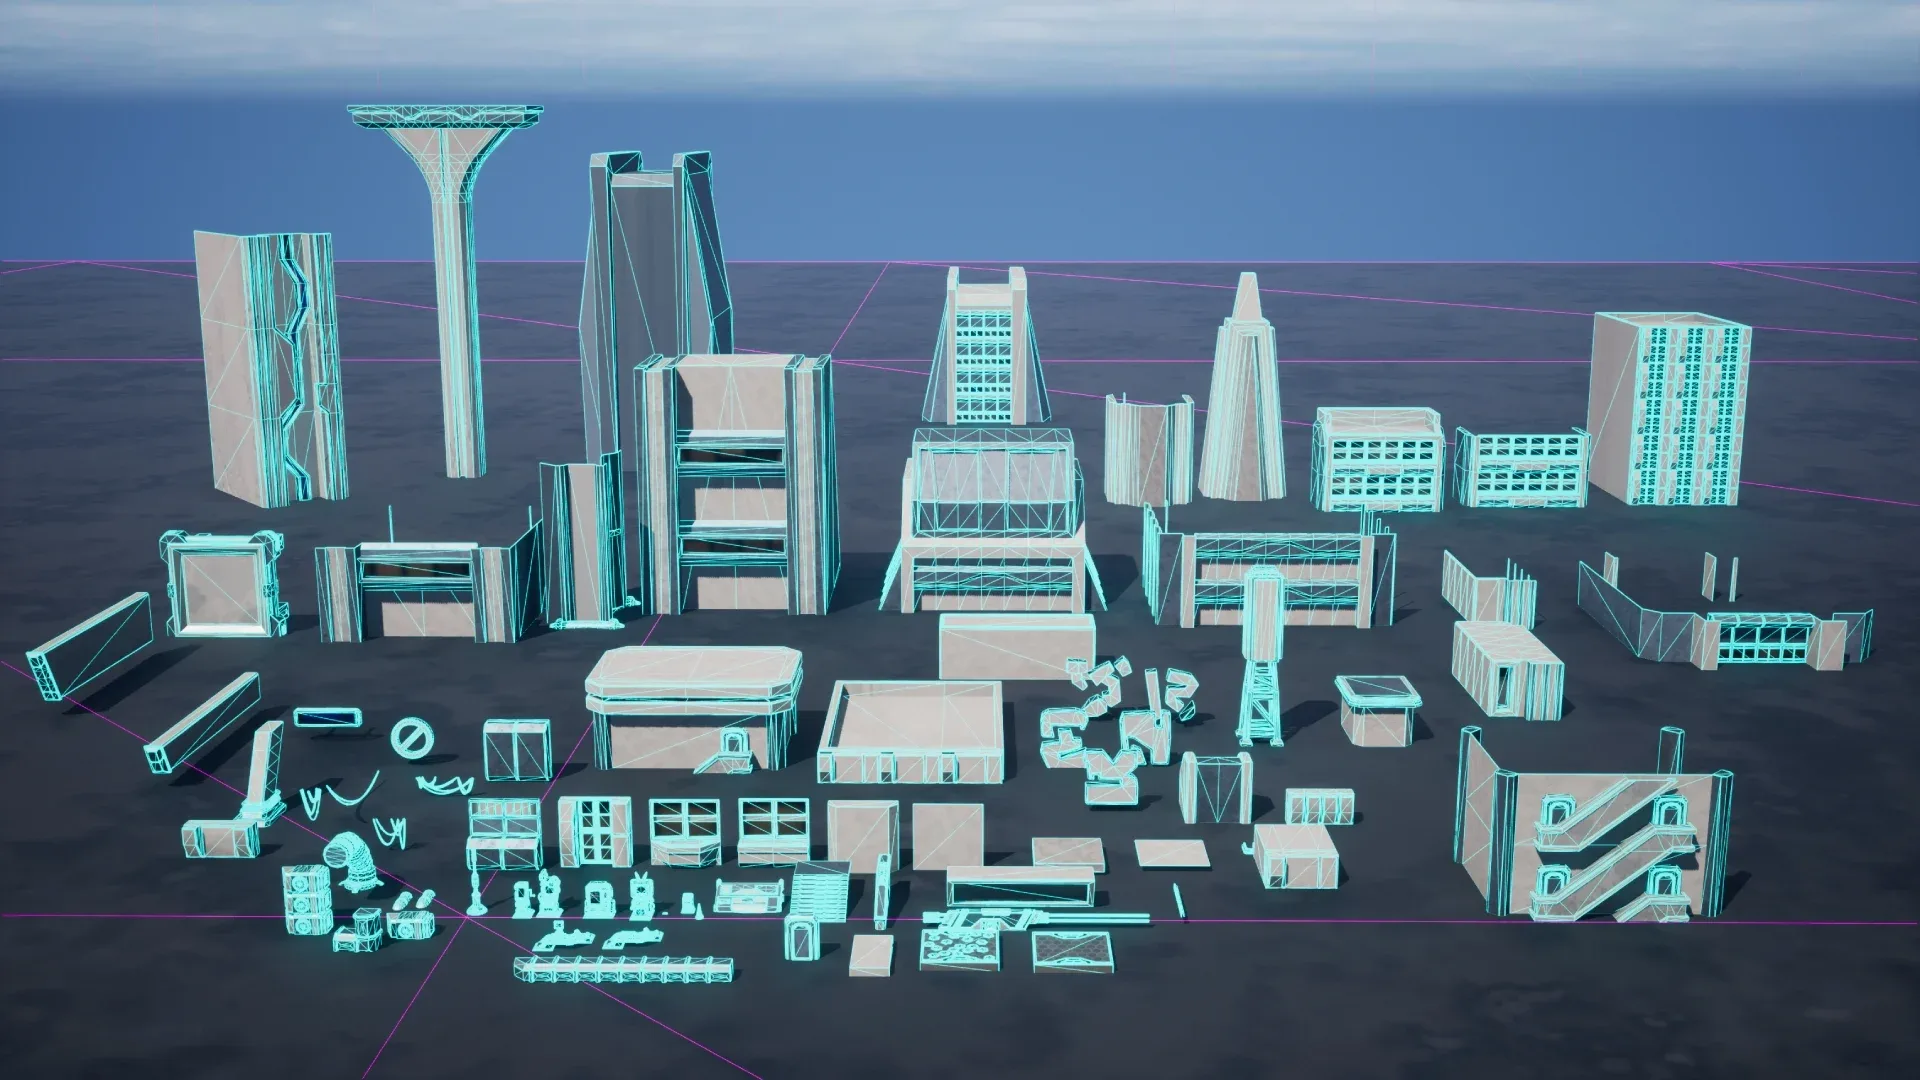 Cyberpunk City stylized scifi environment